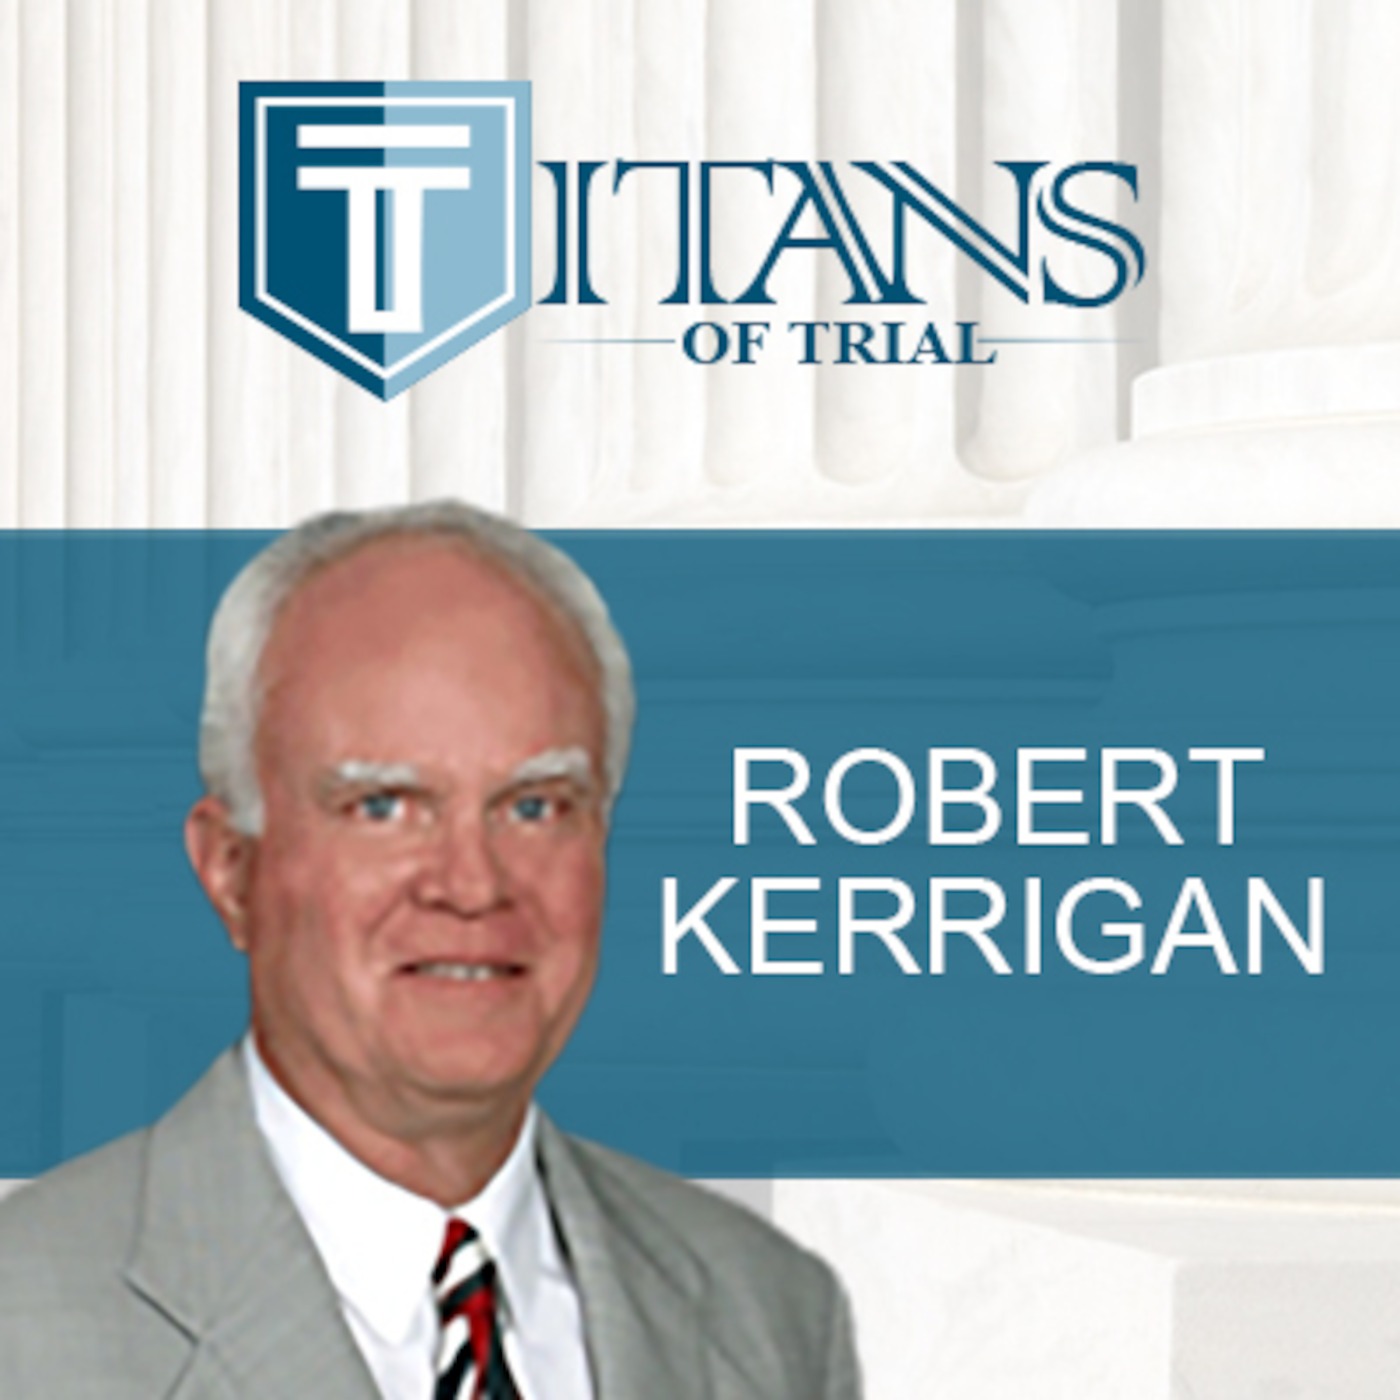 Titans of Trial - Bob Kerrigan